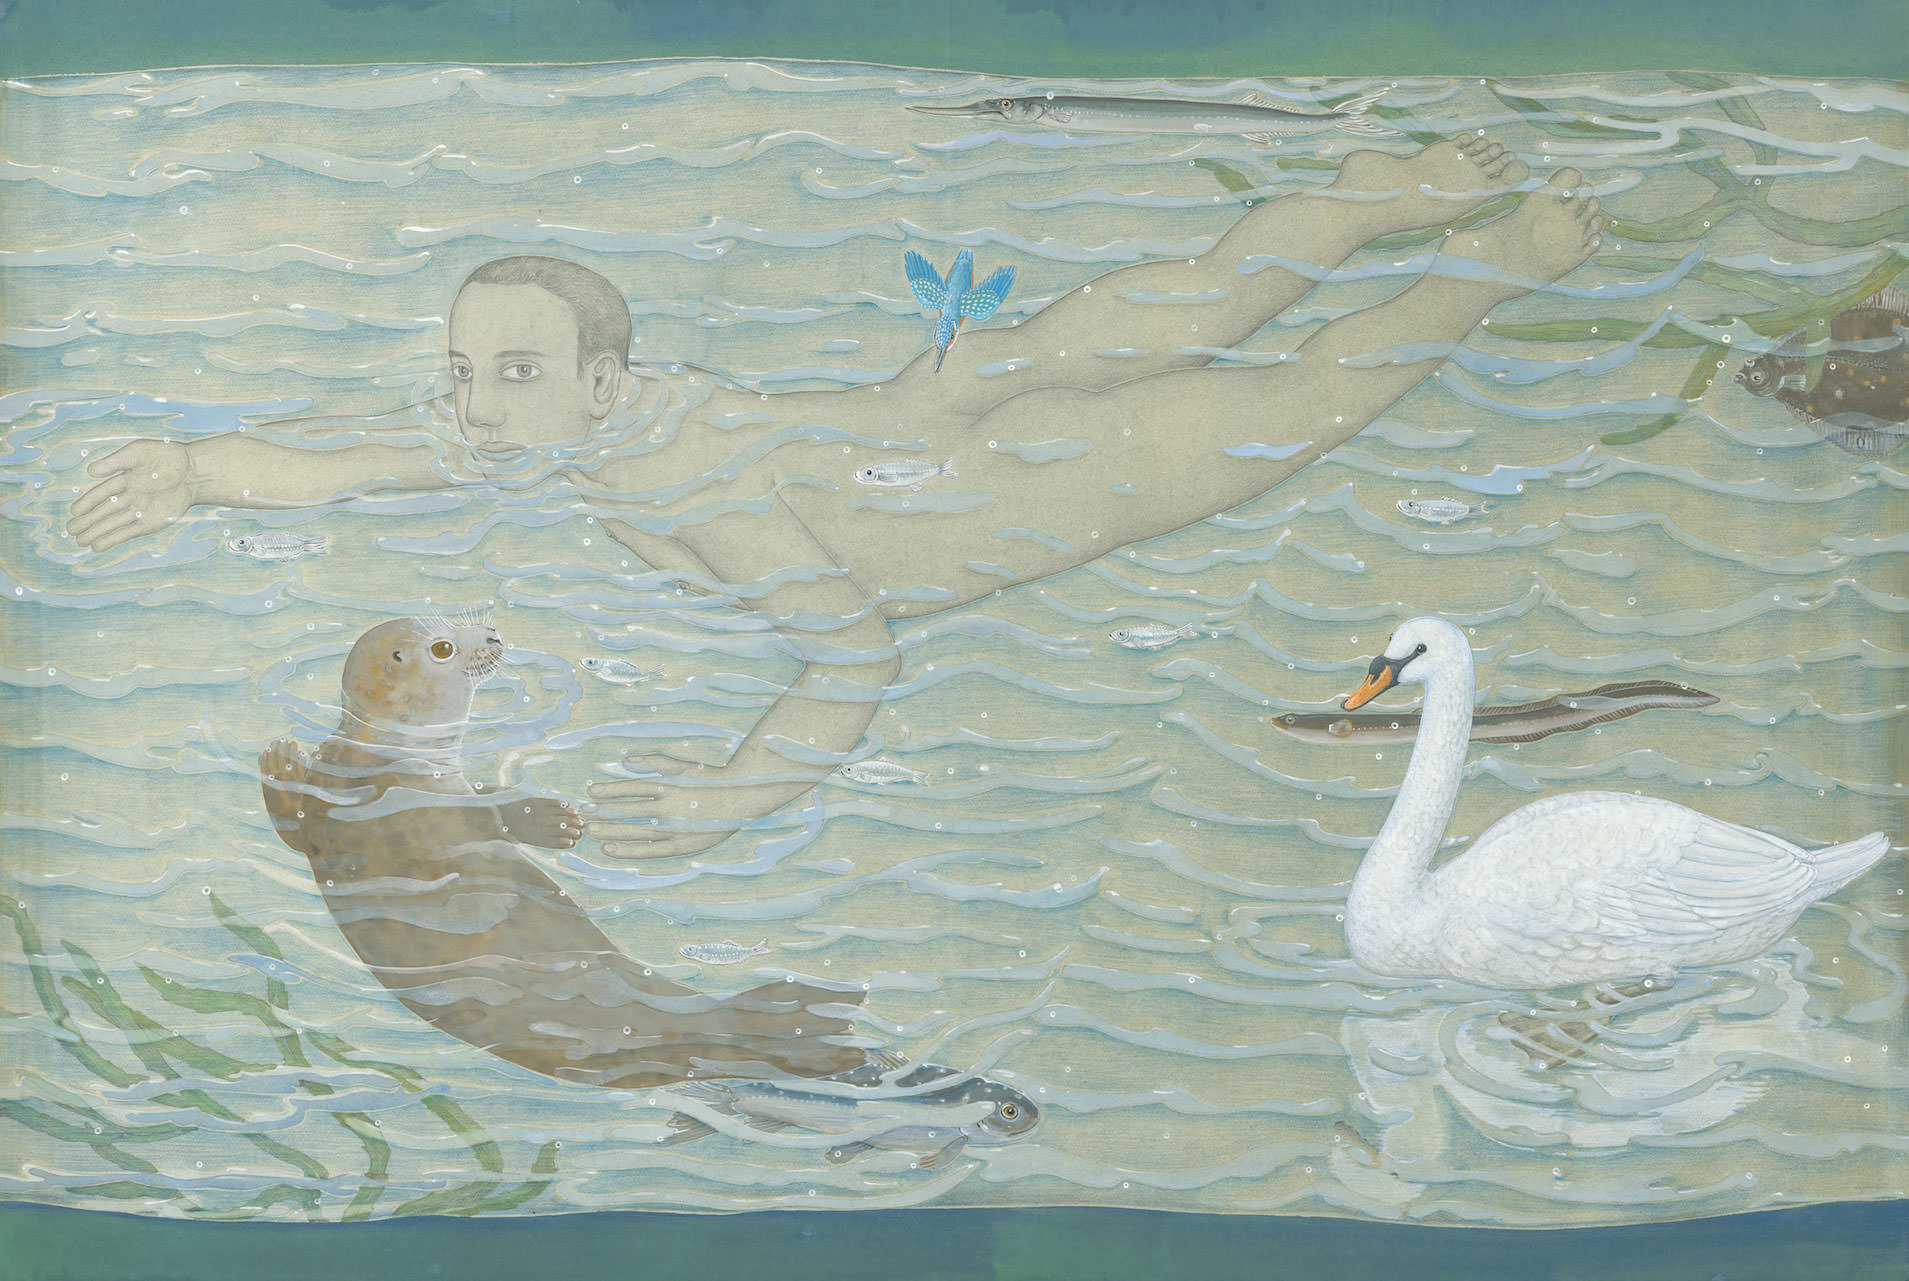 Adam zwemt, 2019, gouache en potlood op papier, 102 x 152 cm. (ontwerptekening voor tapijt)